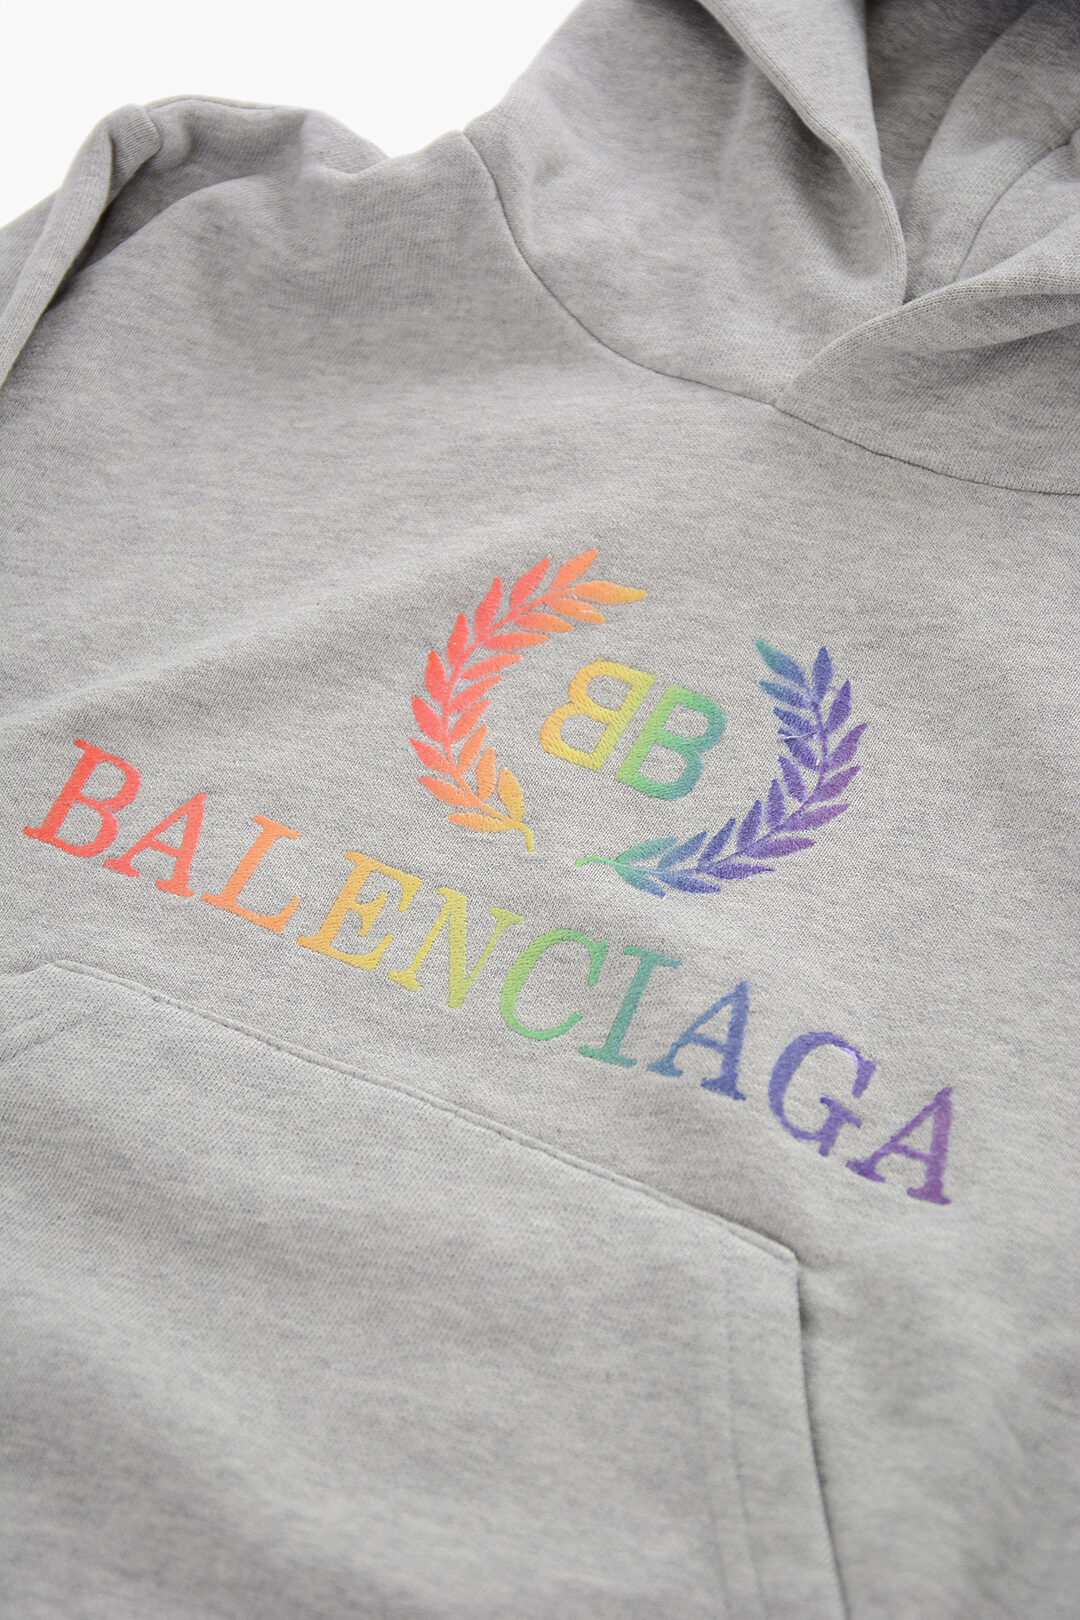 Chia sẻ hơn 69 balenciaga rainbow hoodie mới nhất  trieuson5